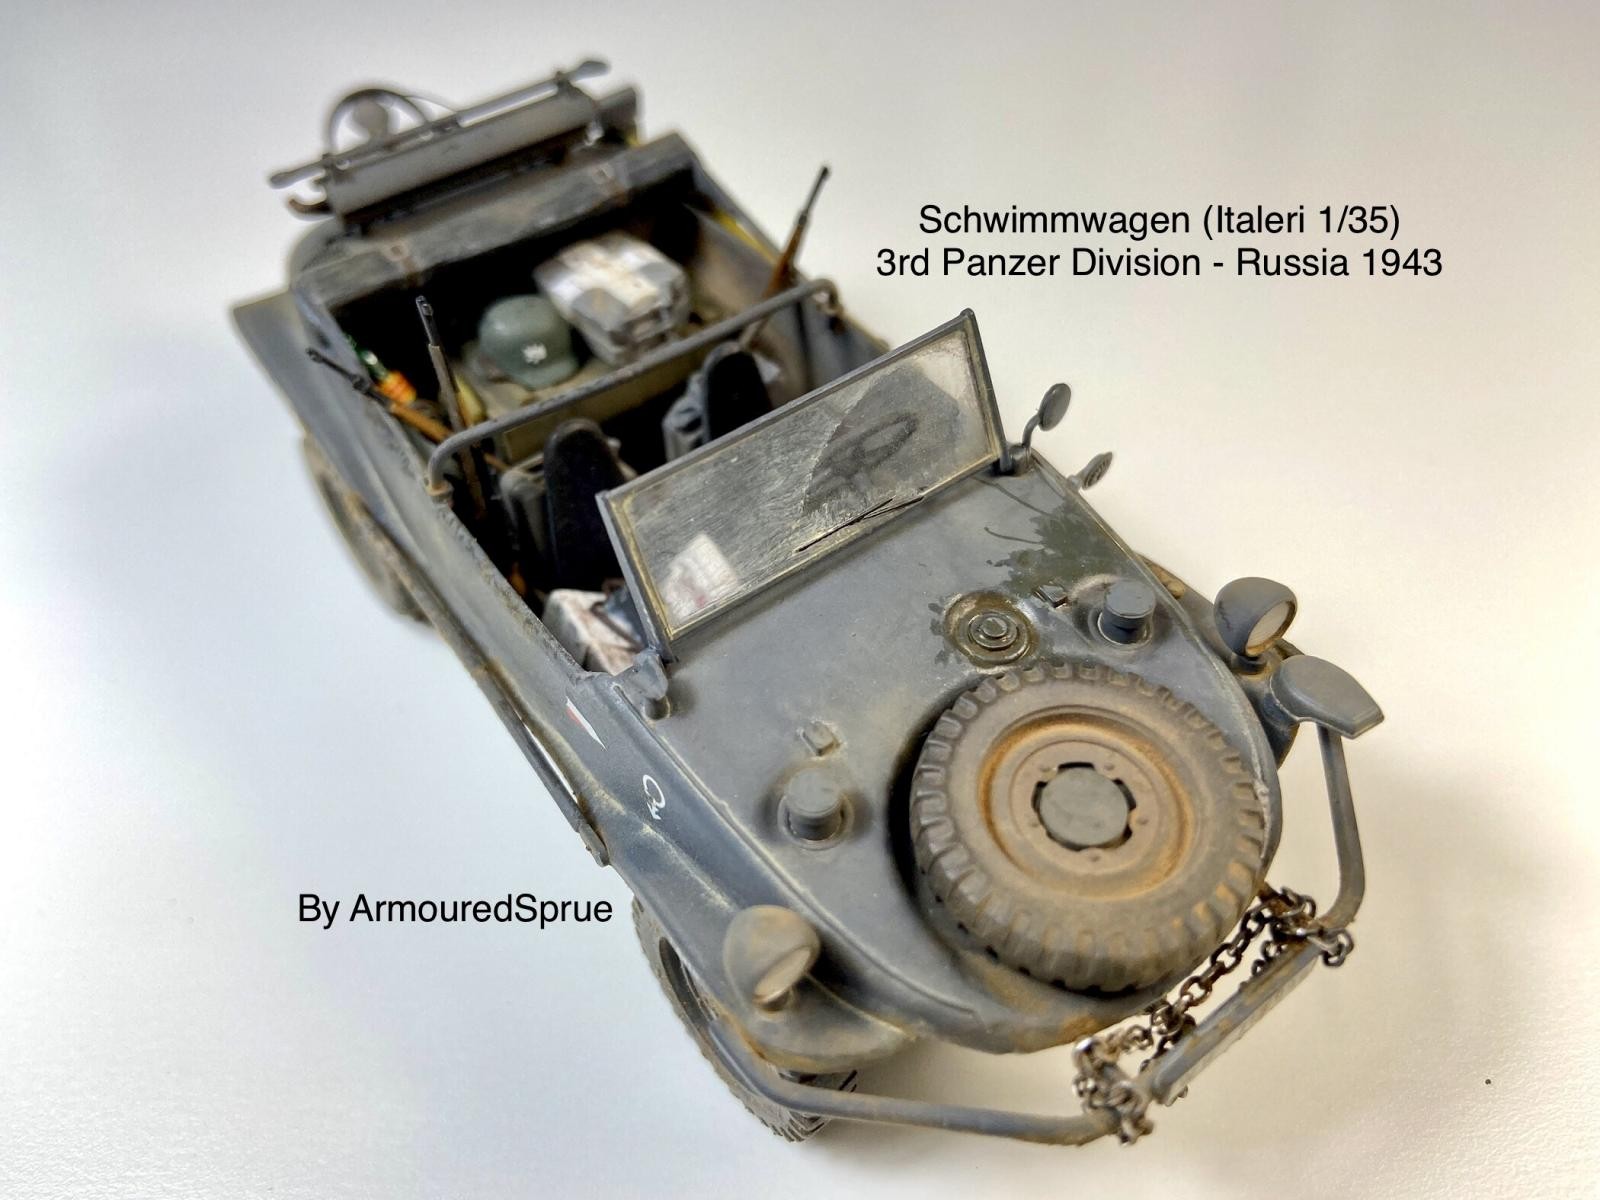 Schwimmwagen (Italeri 1/35) - ArmouredSprue - iModeler